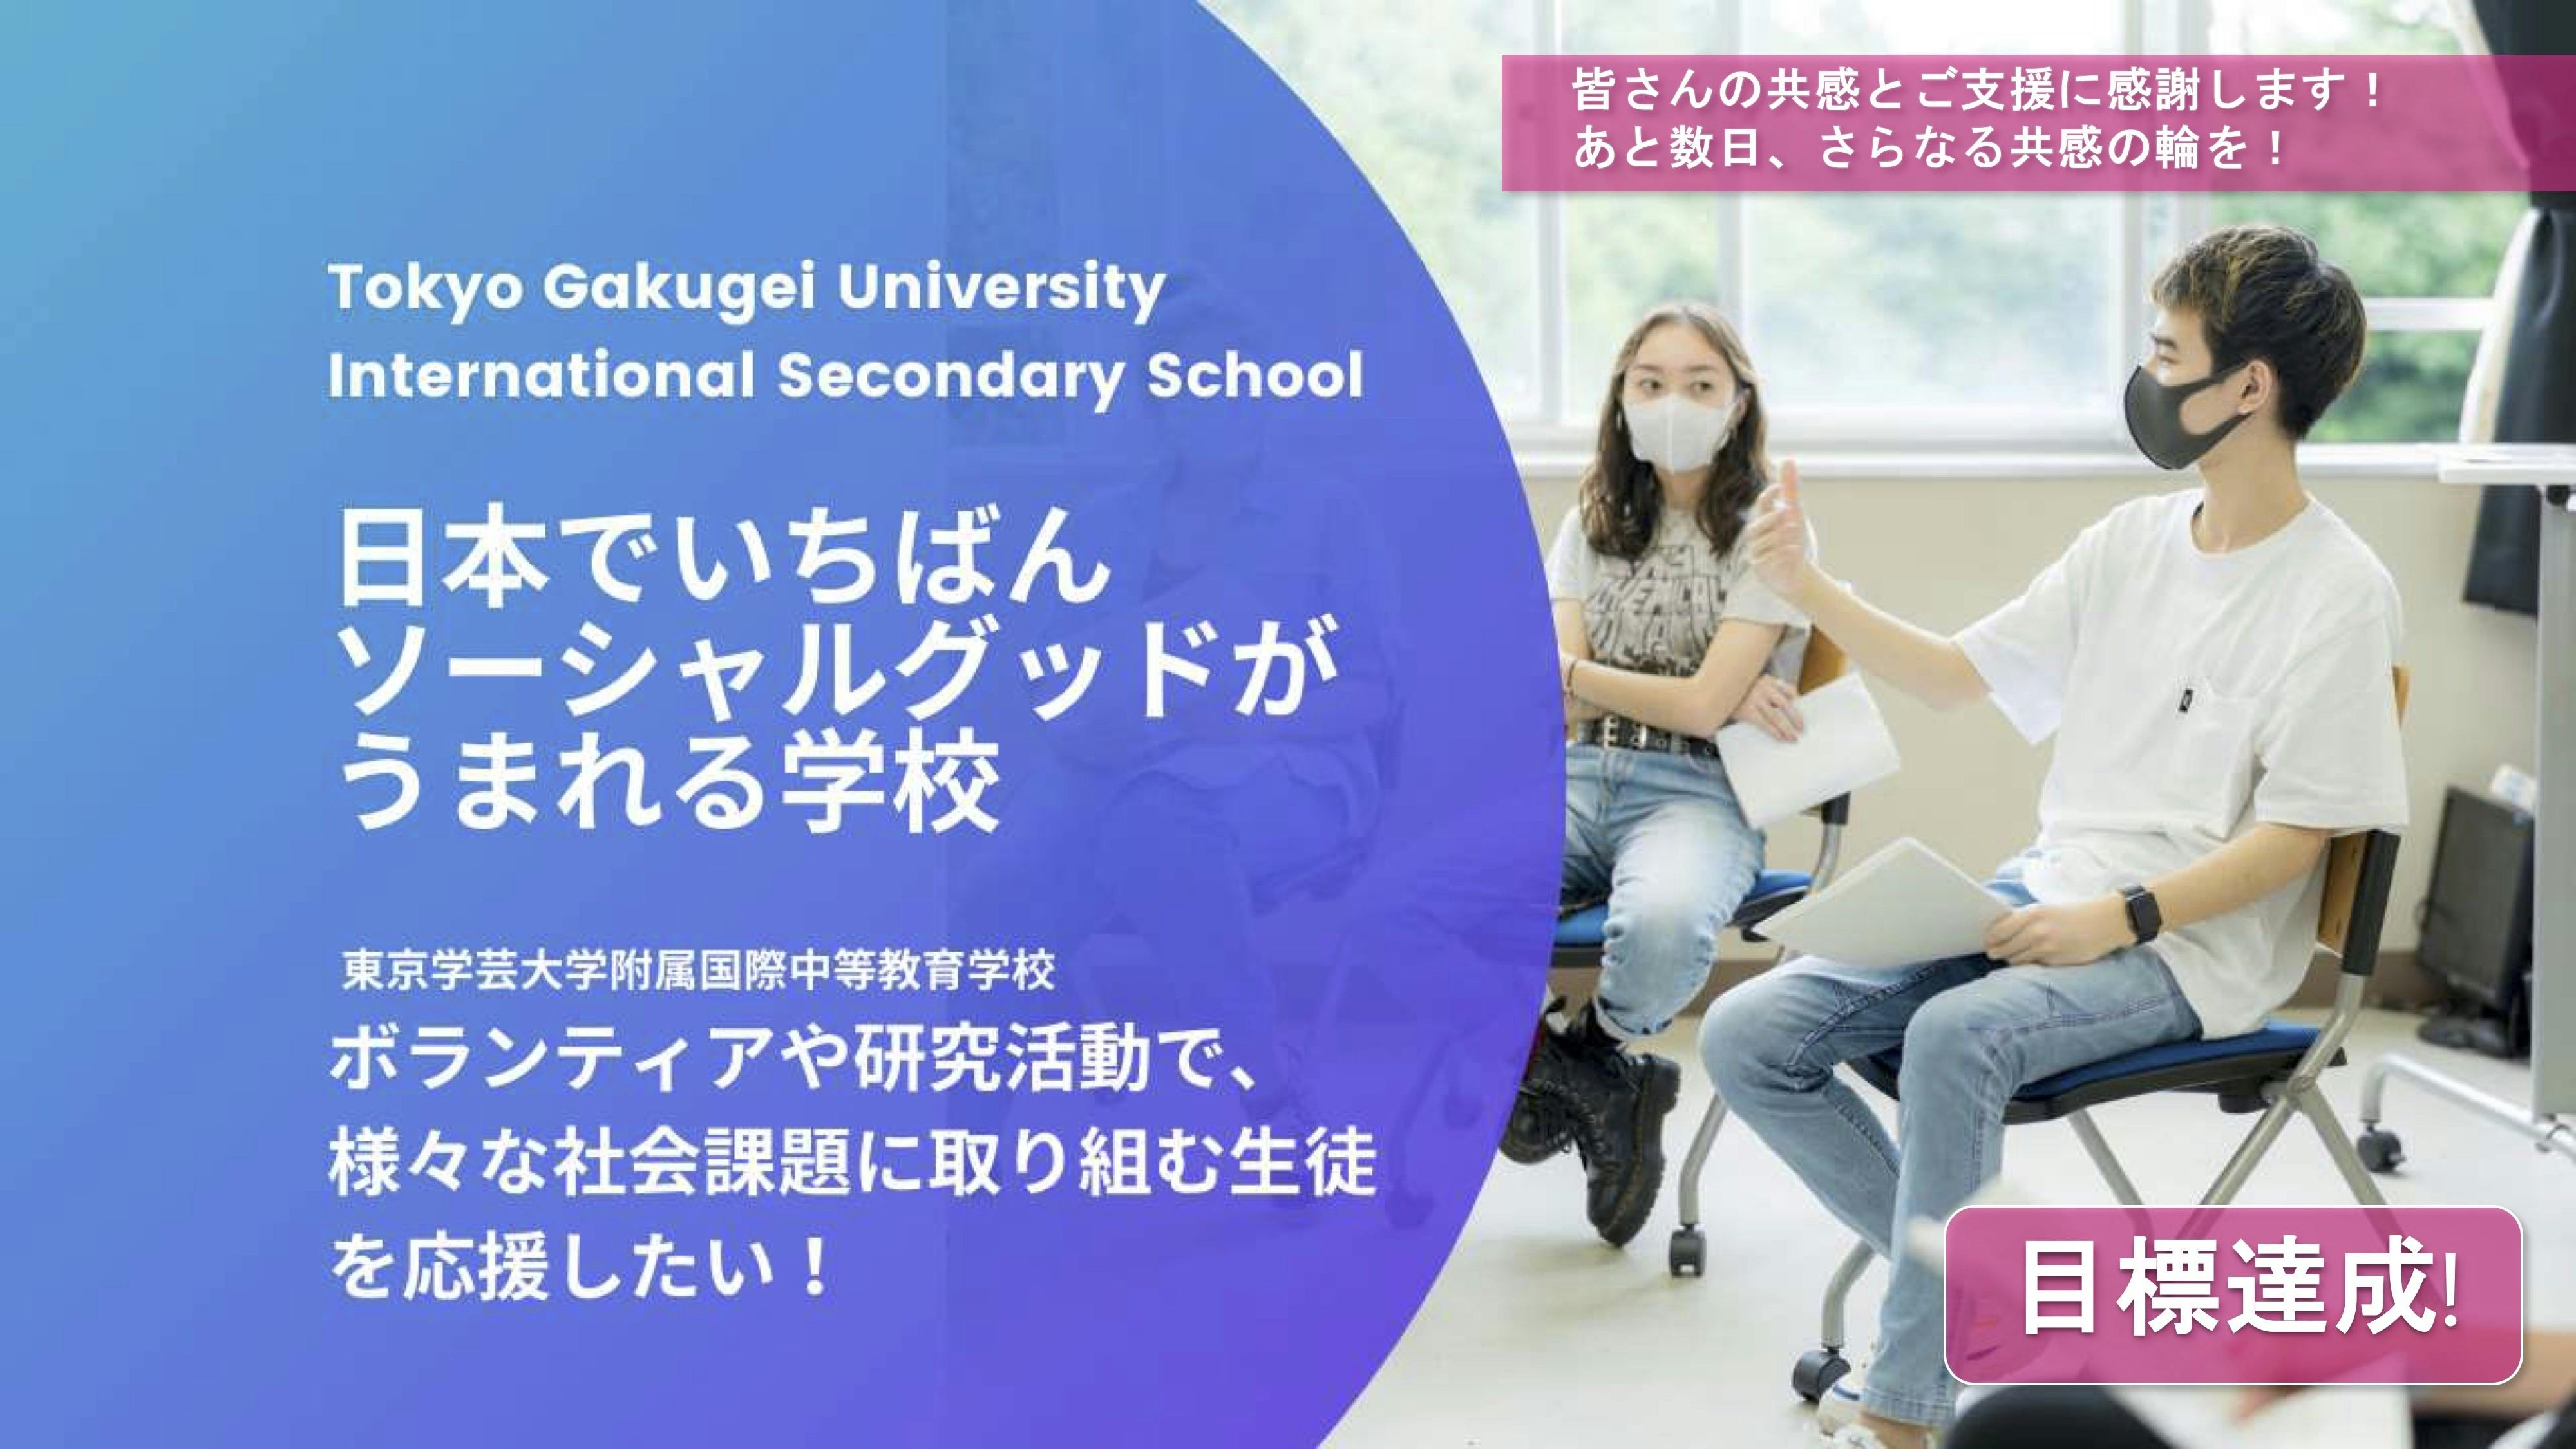 「日本でいちばんソーシャルグッドがうまれる学校」を創りたい！　CAMPFIRE　(キャンプファイヤー)